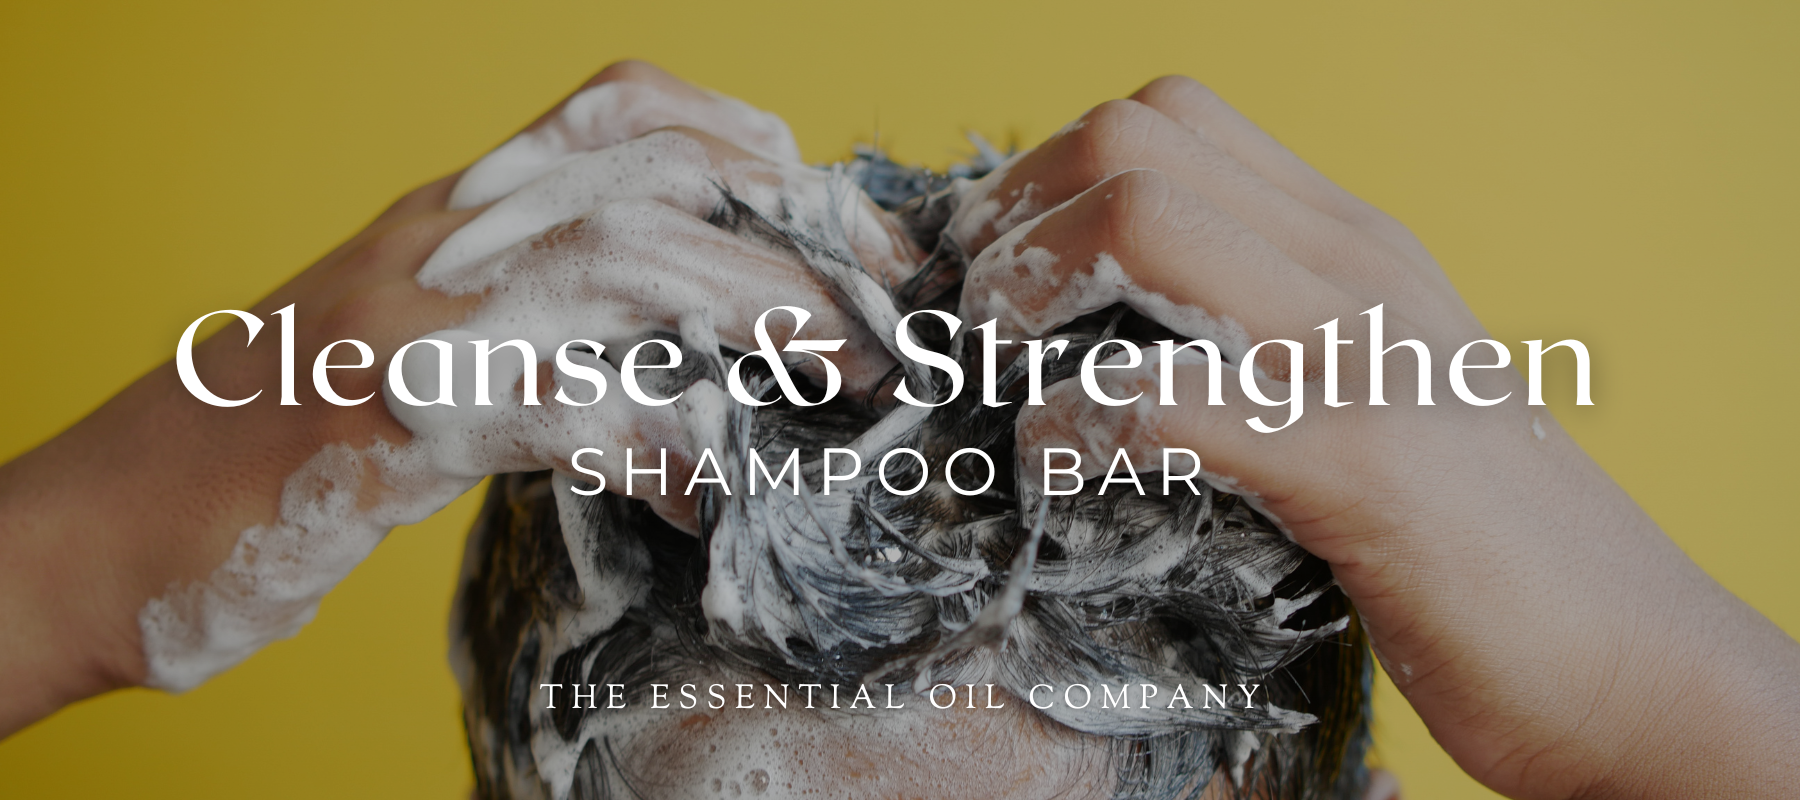 Cleanse & Strengthen Shampoo Bar